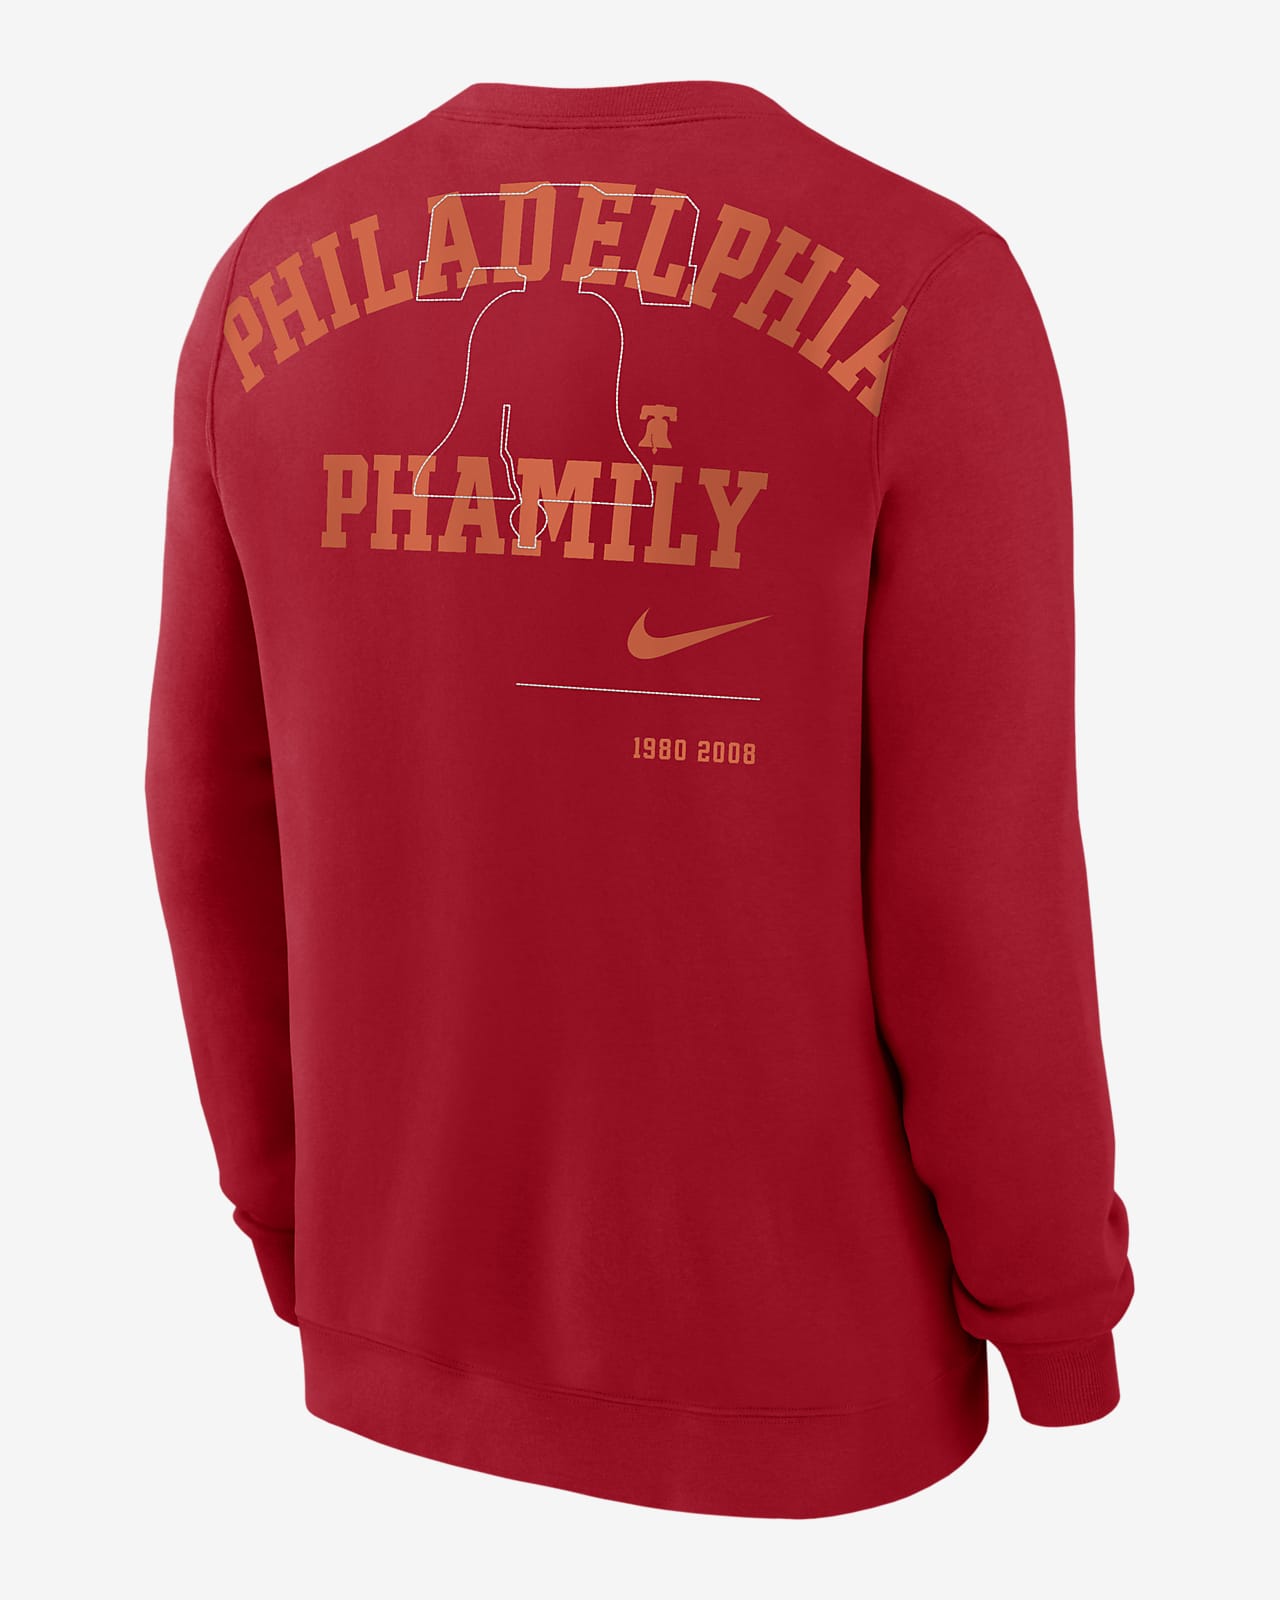 Phillies Baseball Sweatshirt Philadelphia Phillies Vintage